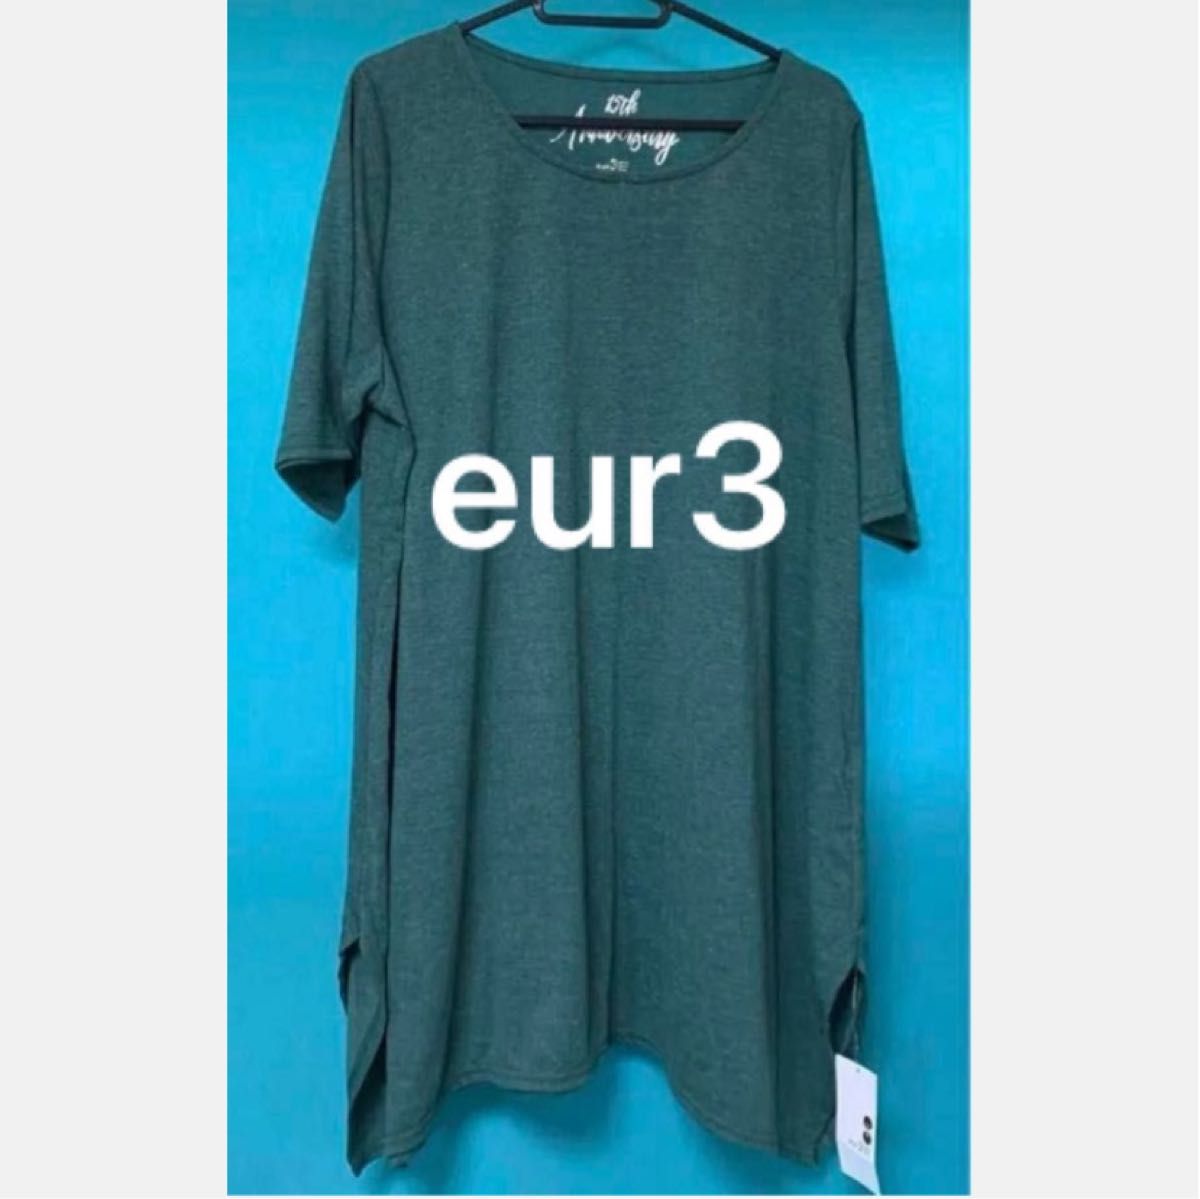 【eur3】新品タグ付 チュニックTシャツ Tシャツ 半袖 トップス 半袖Tシャツ カットソー